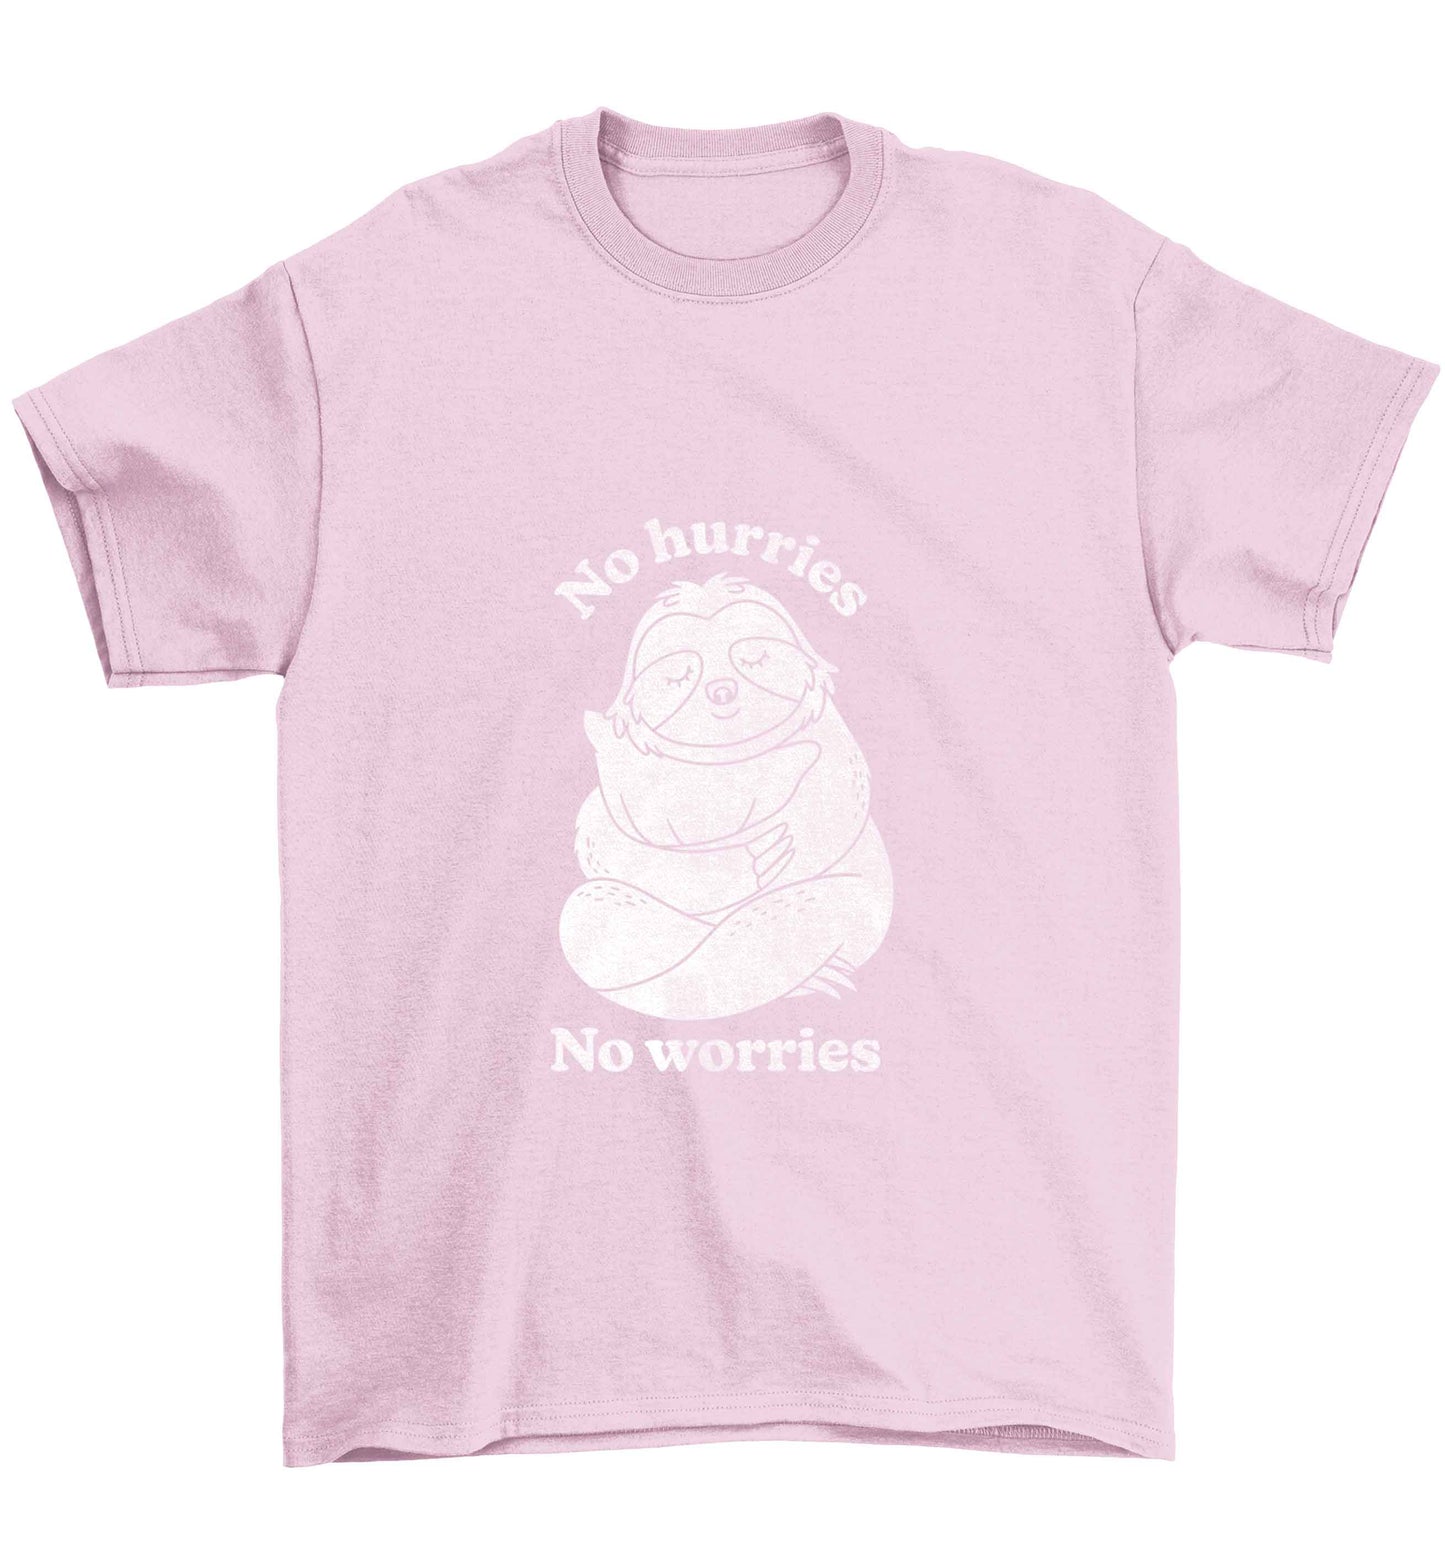 No hurries no worries Children's light pink Tshirt 12-13 Years